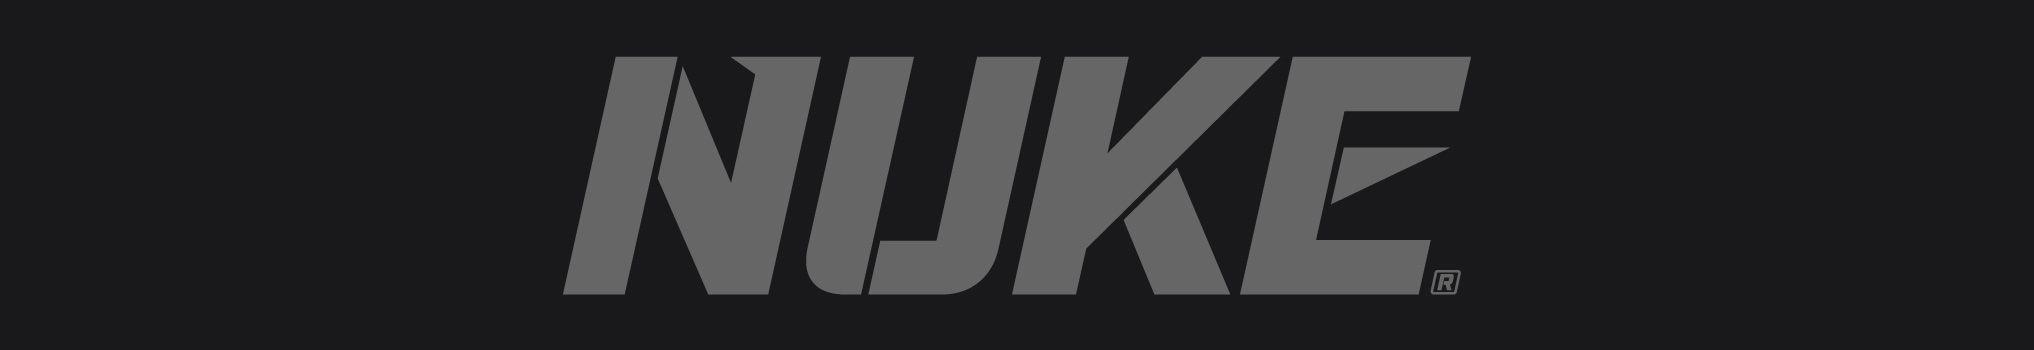 Nuke Logo - Nuke Logo